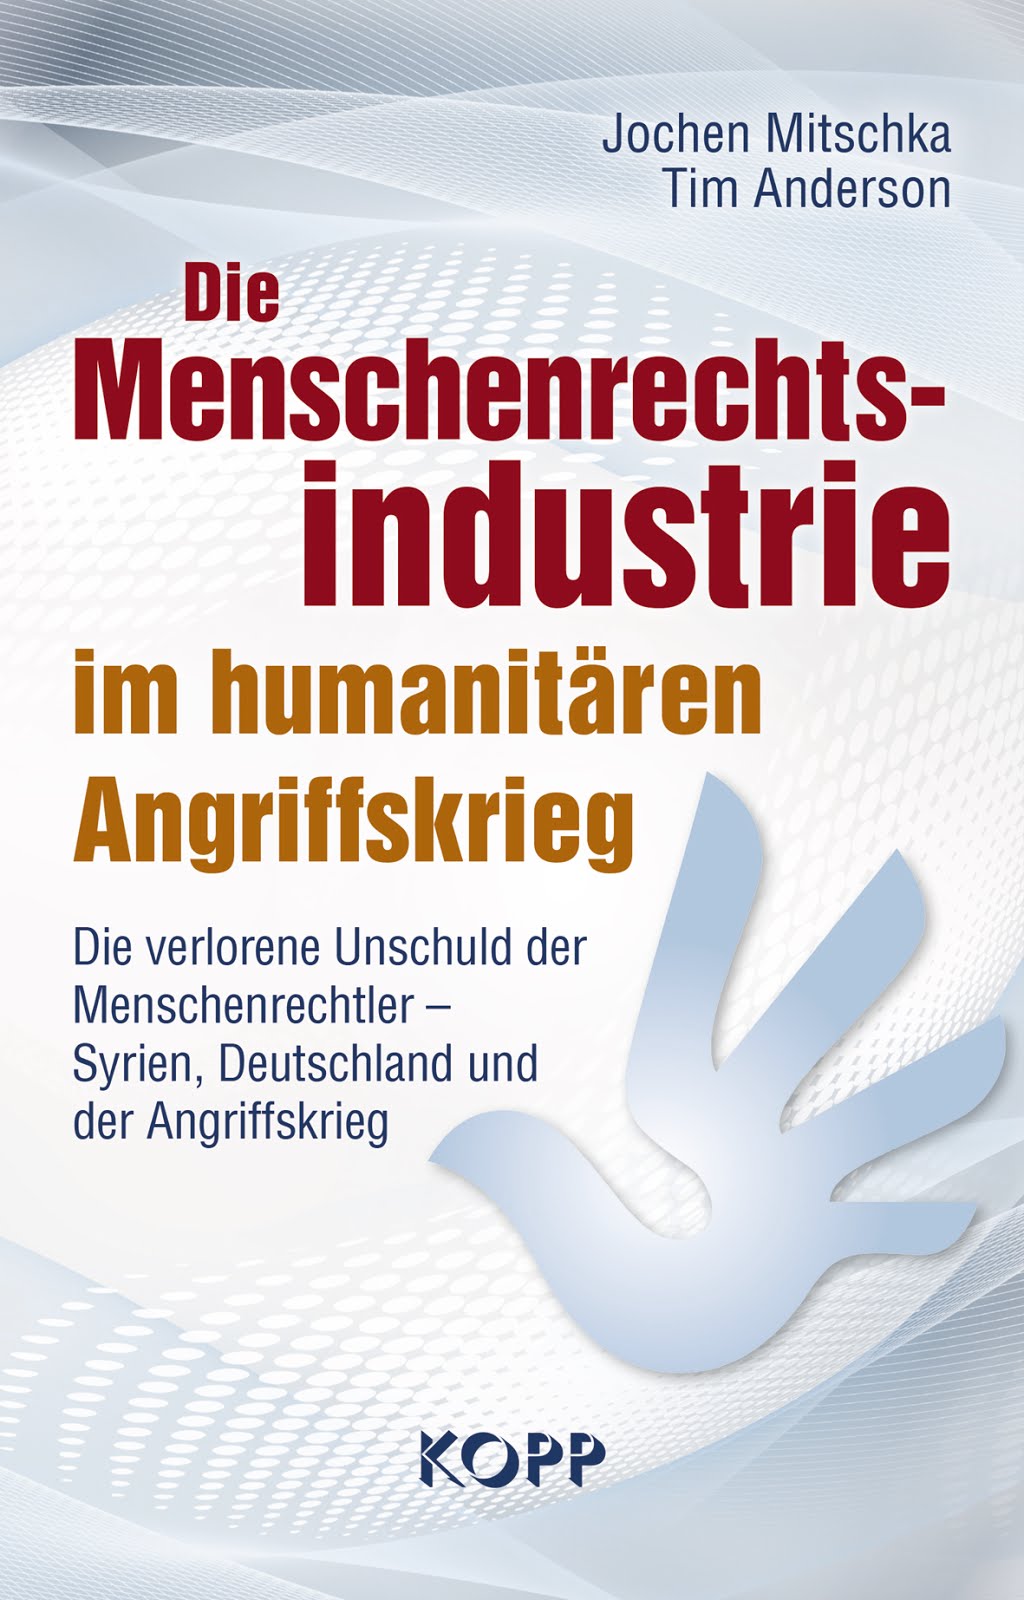 Die Menschenrechtsindustrie im humanitären Angriffskrieg